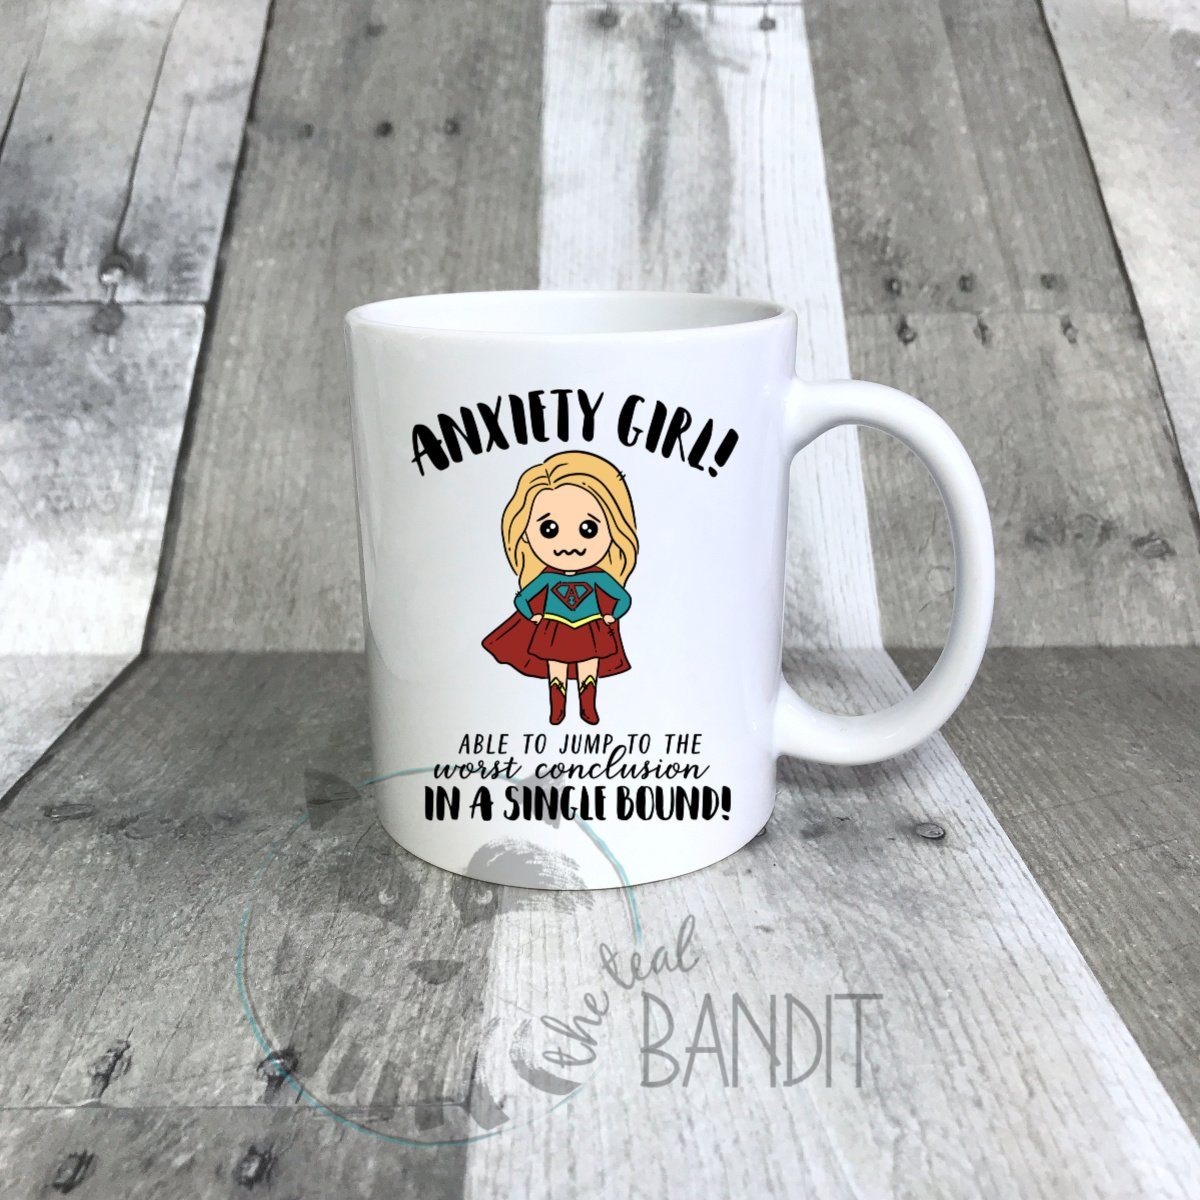 "Anxiety Girl" mug mug The Teal Bandit 